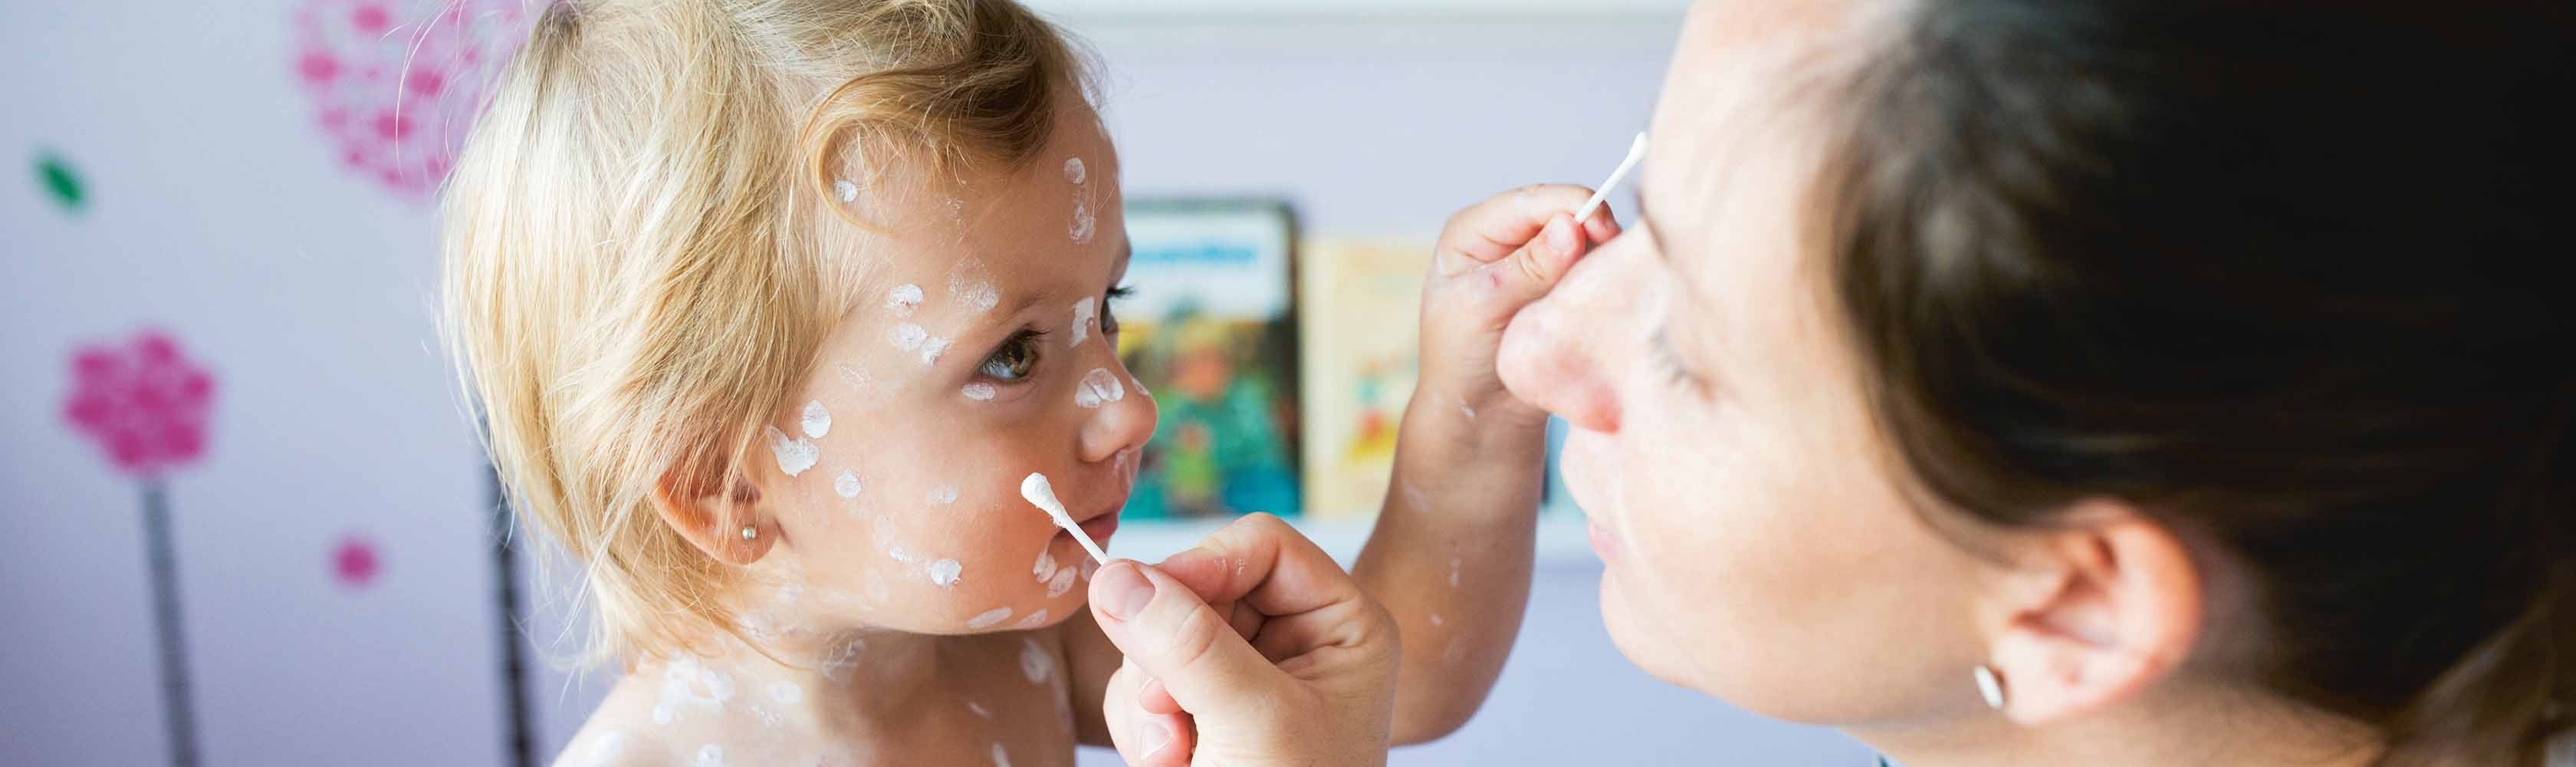 Una mamma applica una lozione anti-prurito alla figlioletta affetta da varicella.